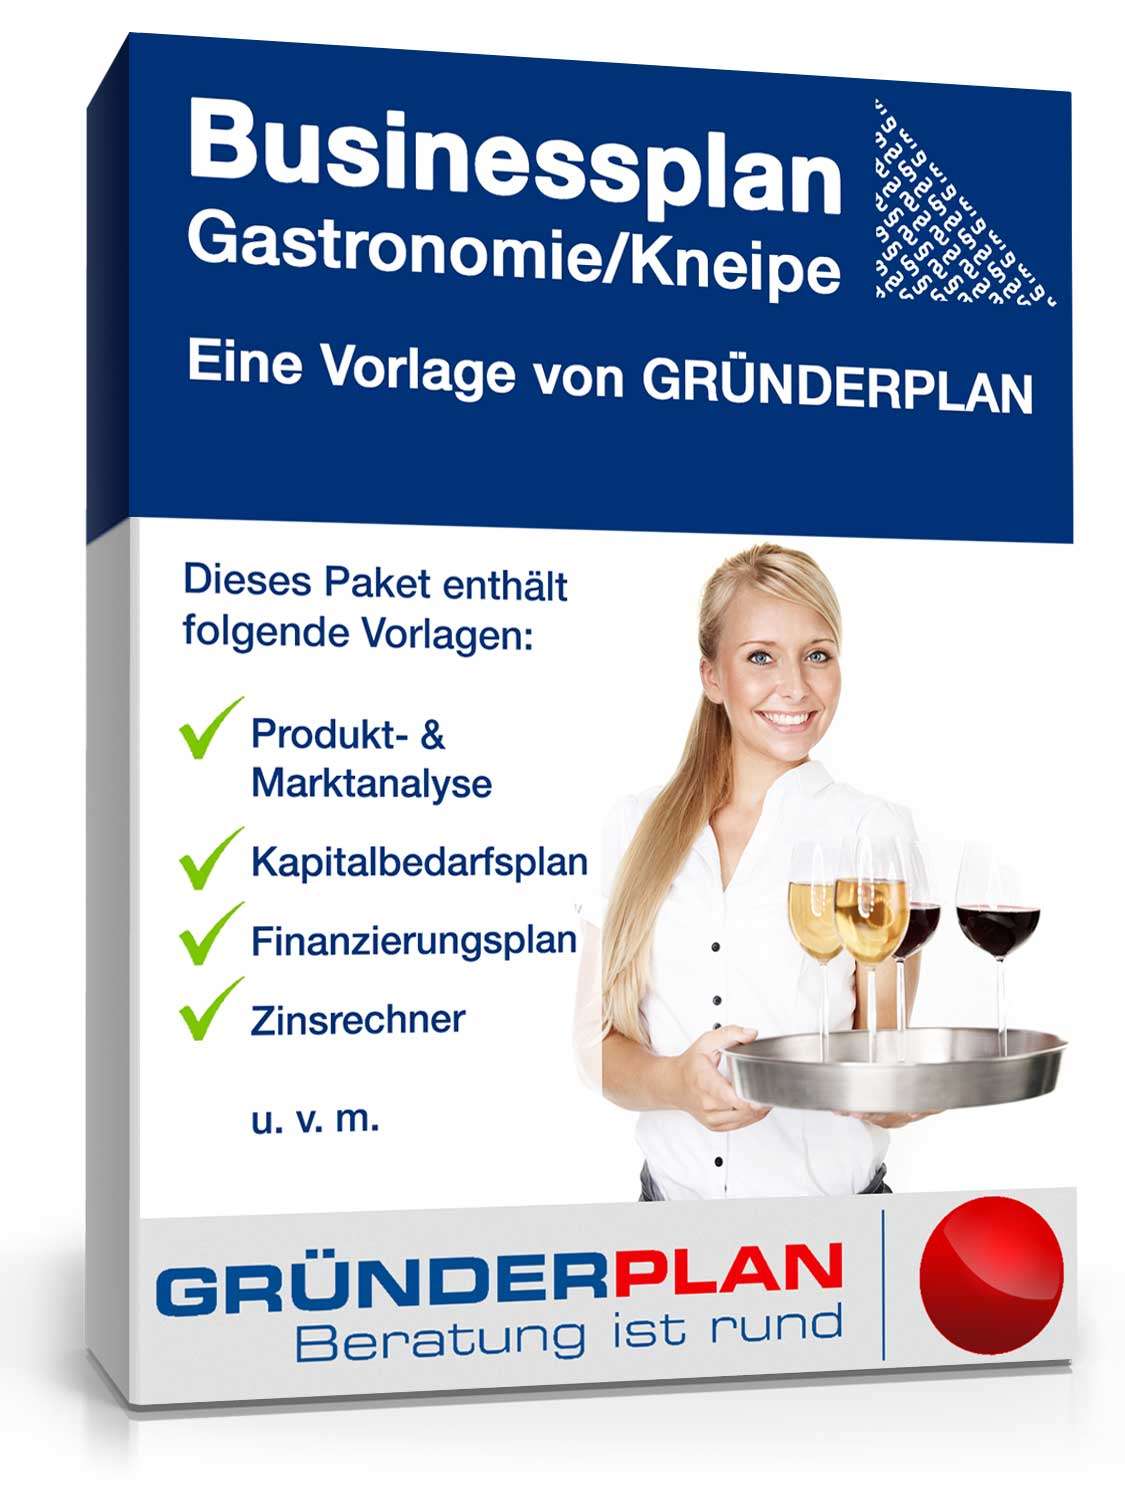 Hauptbild des Produkts: Businessplan Gastronomie/Kneipe von Gründerplan